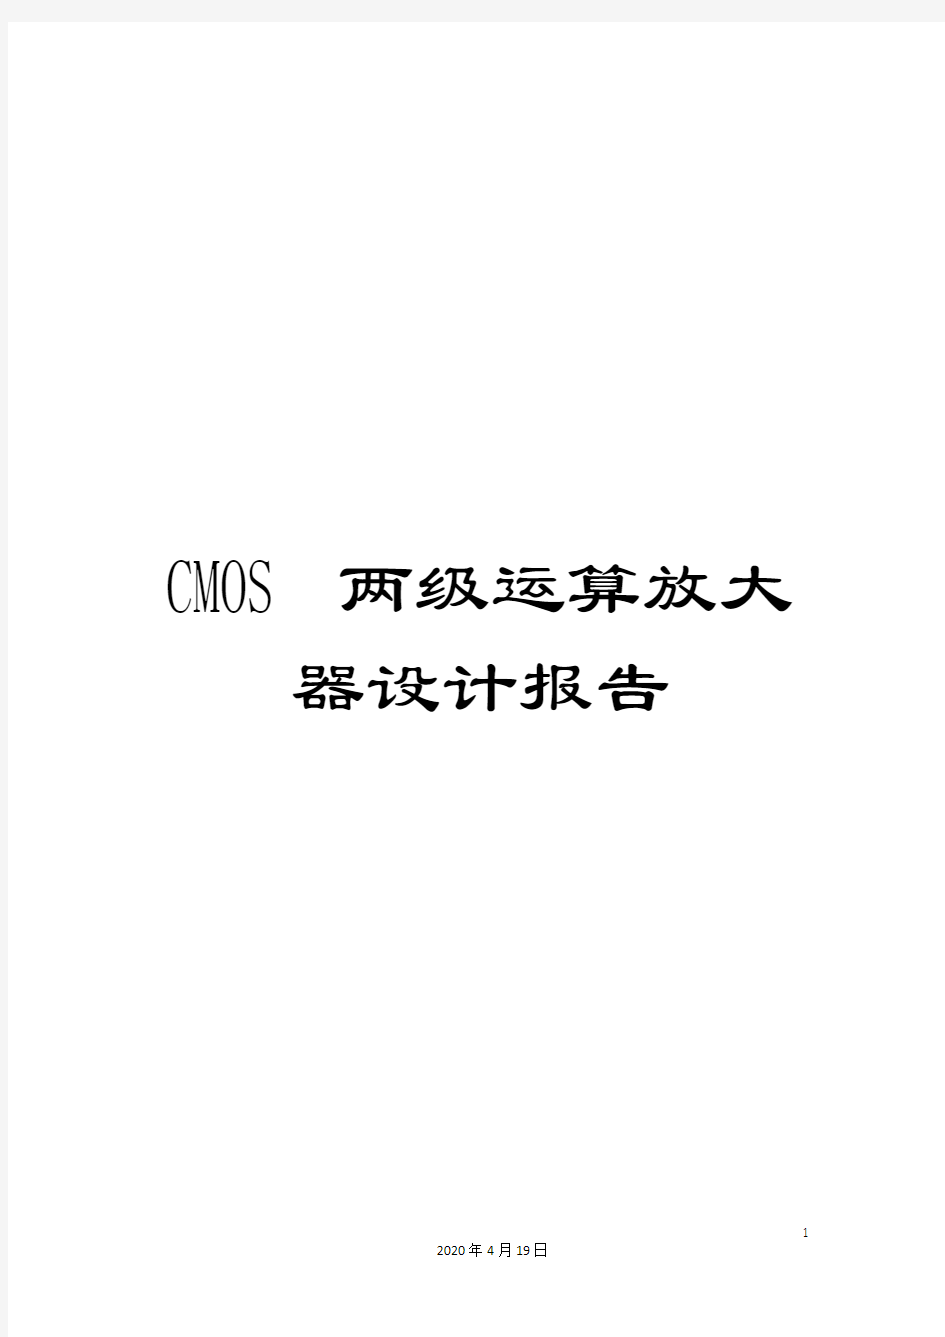 CMOS两级运算放大器设计报告